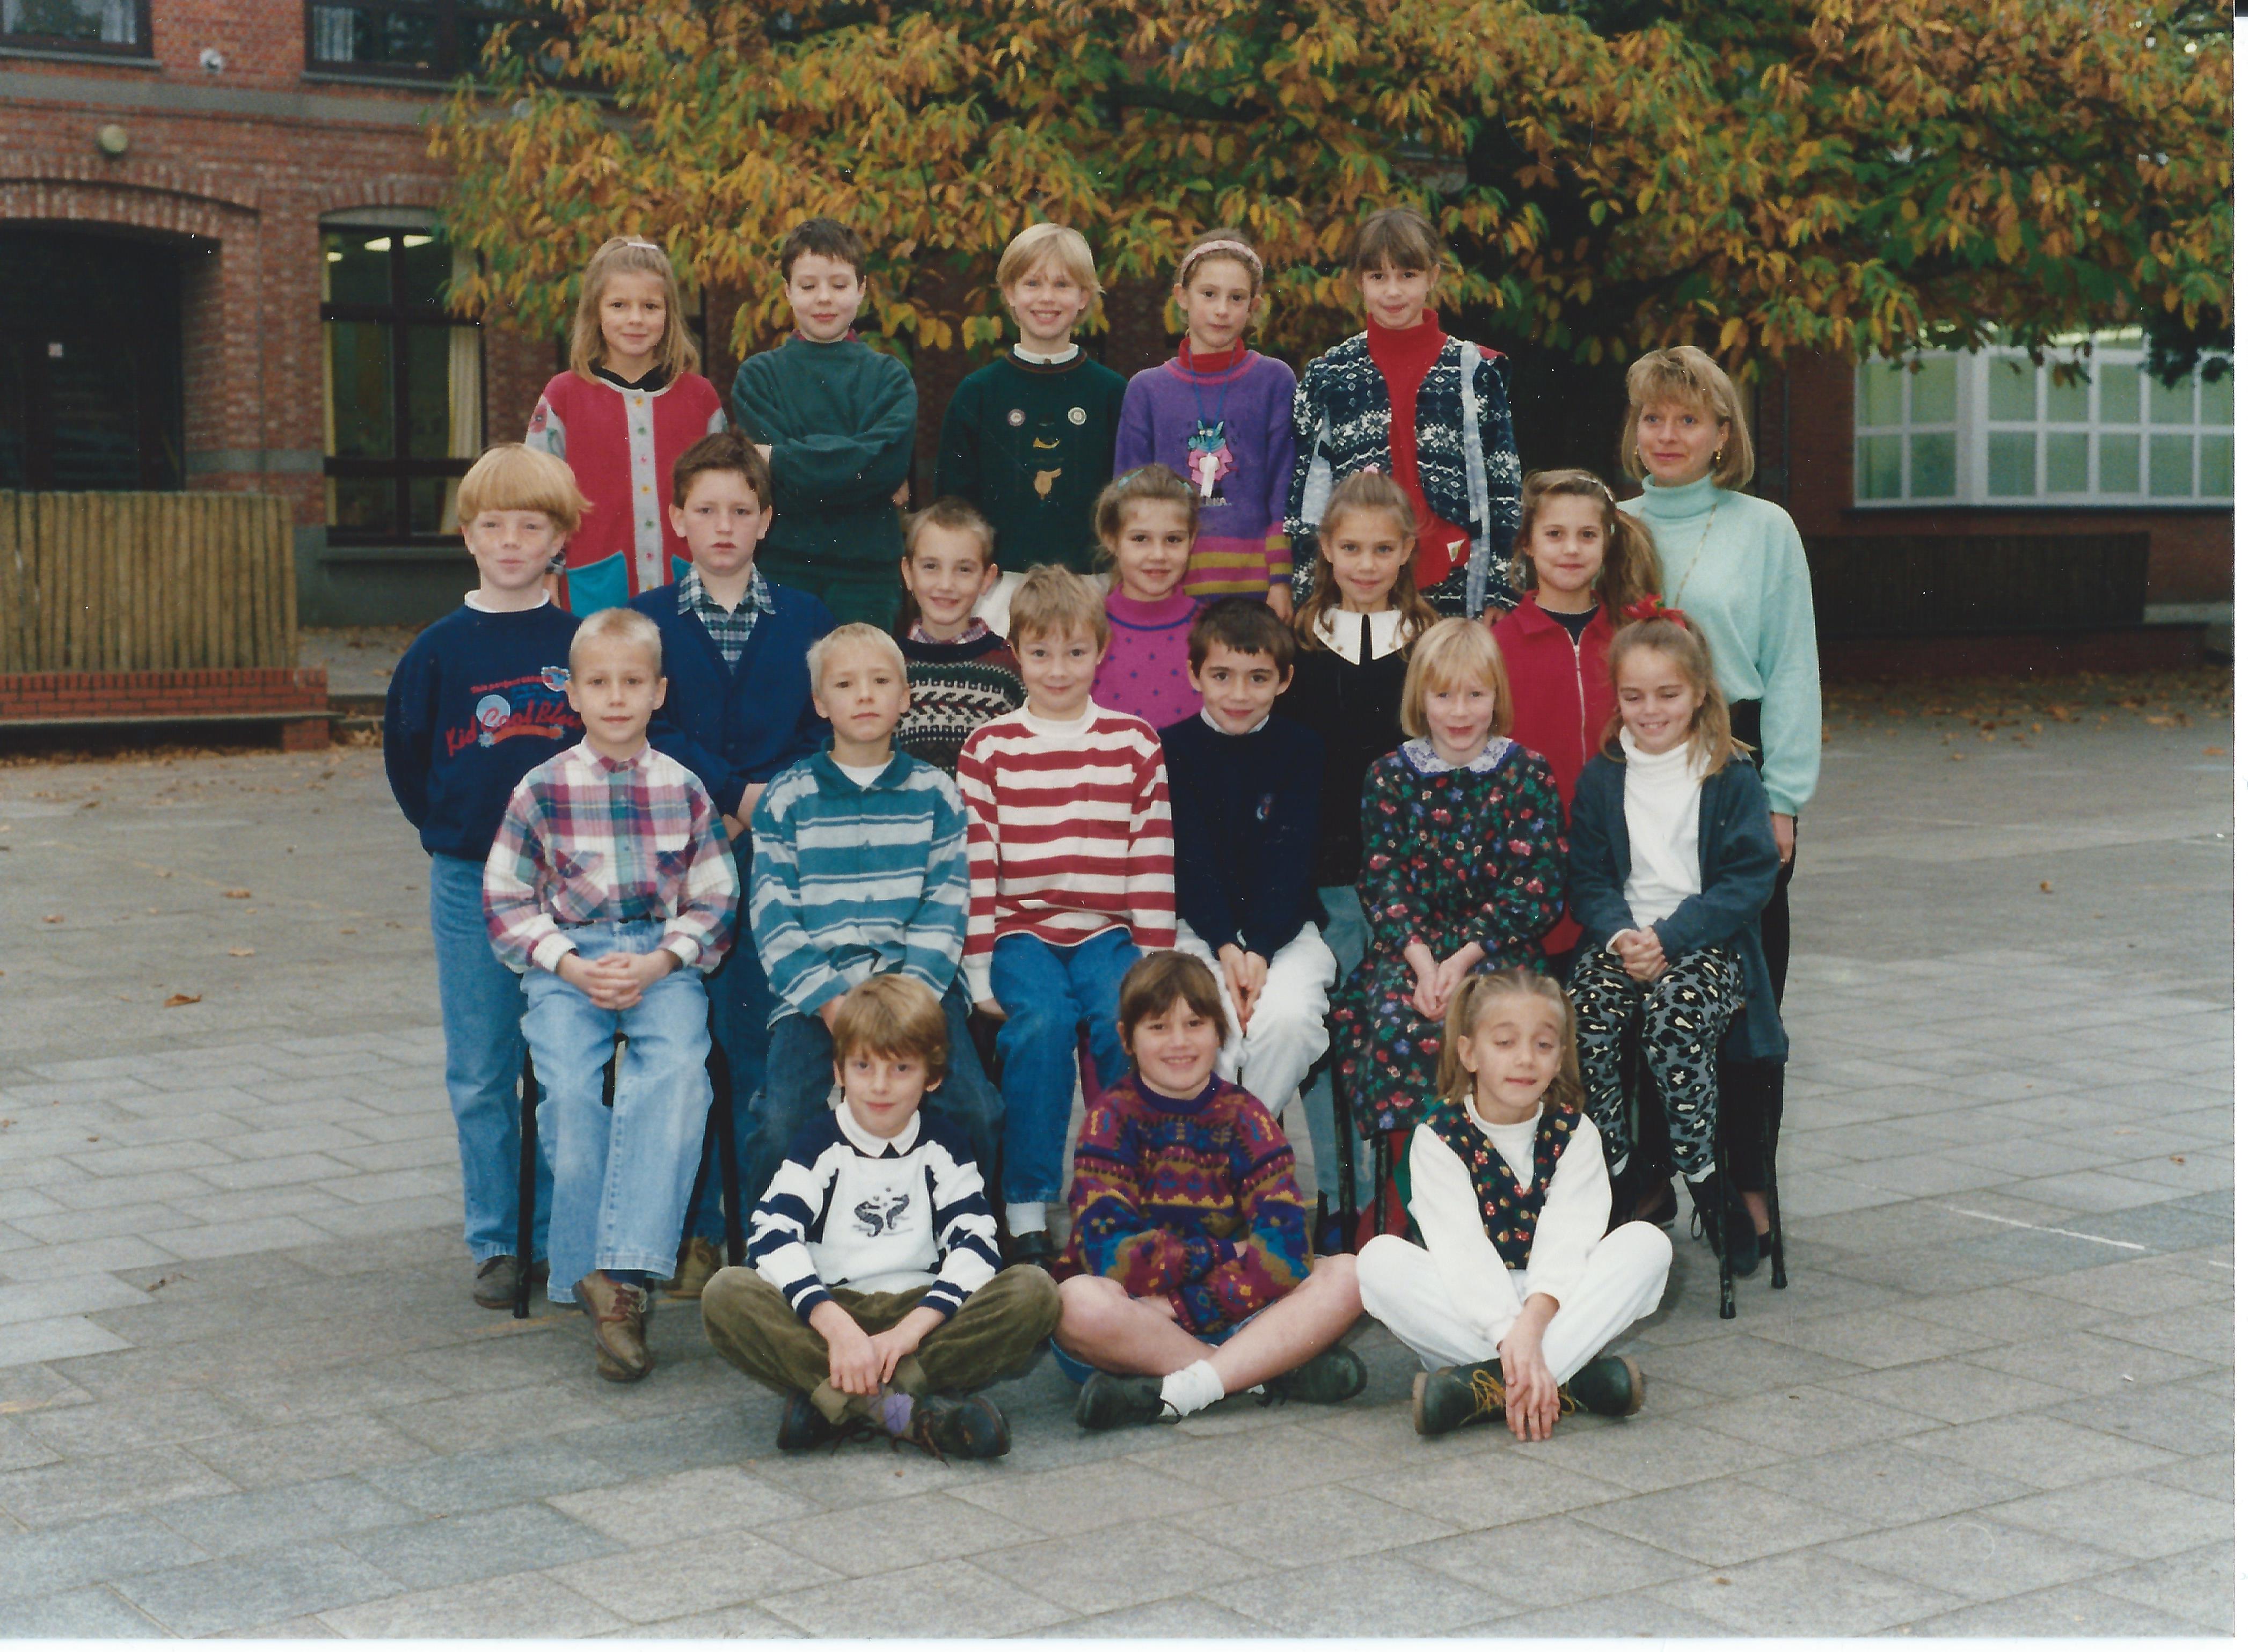 1993-1994 klasfoto 3e leerjaar Gonnie Brughmans,Sint Martinusschool, Vrije Gesubsidieerde School, Lindedreef 18 .jpg